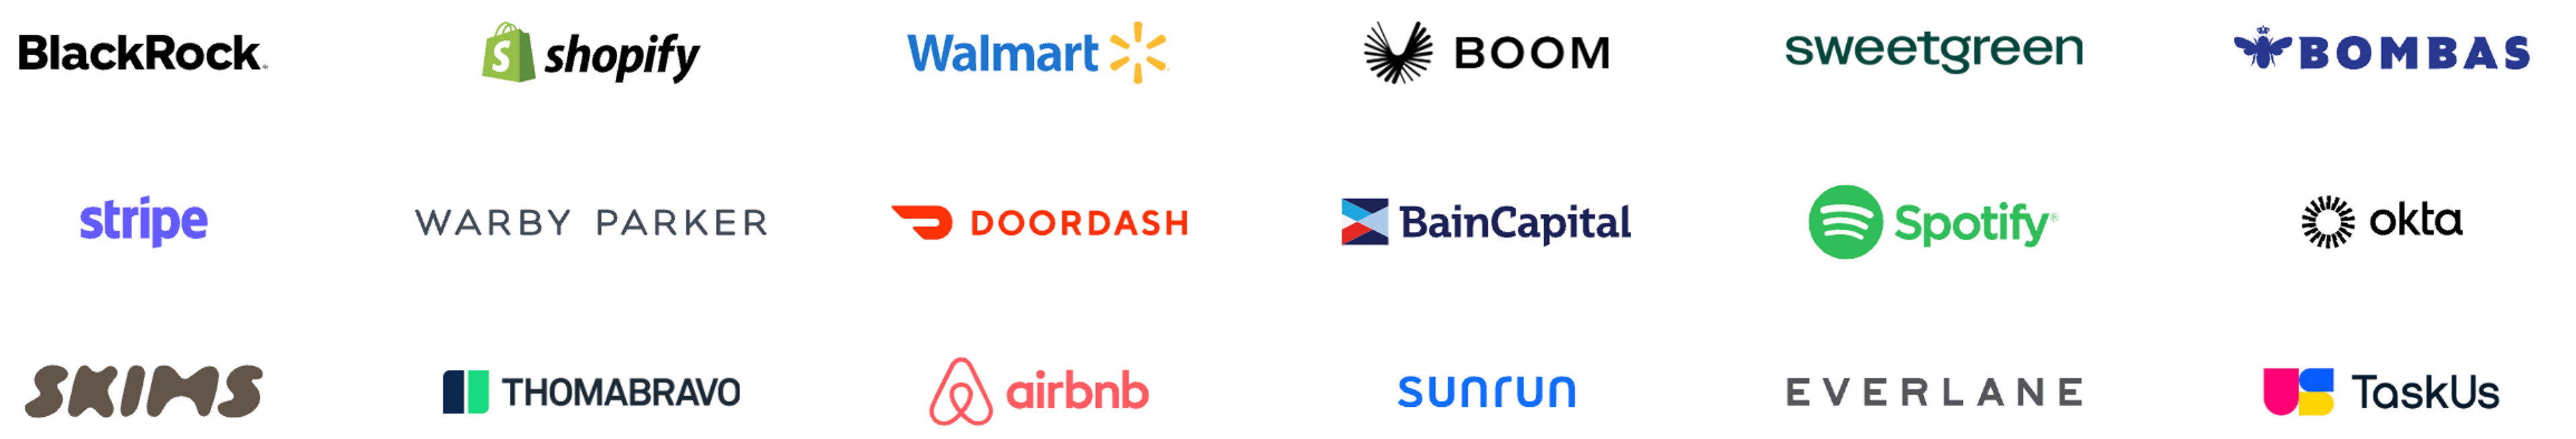 grid of logos